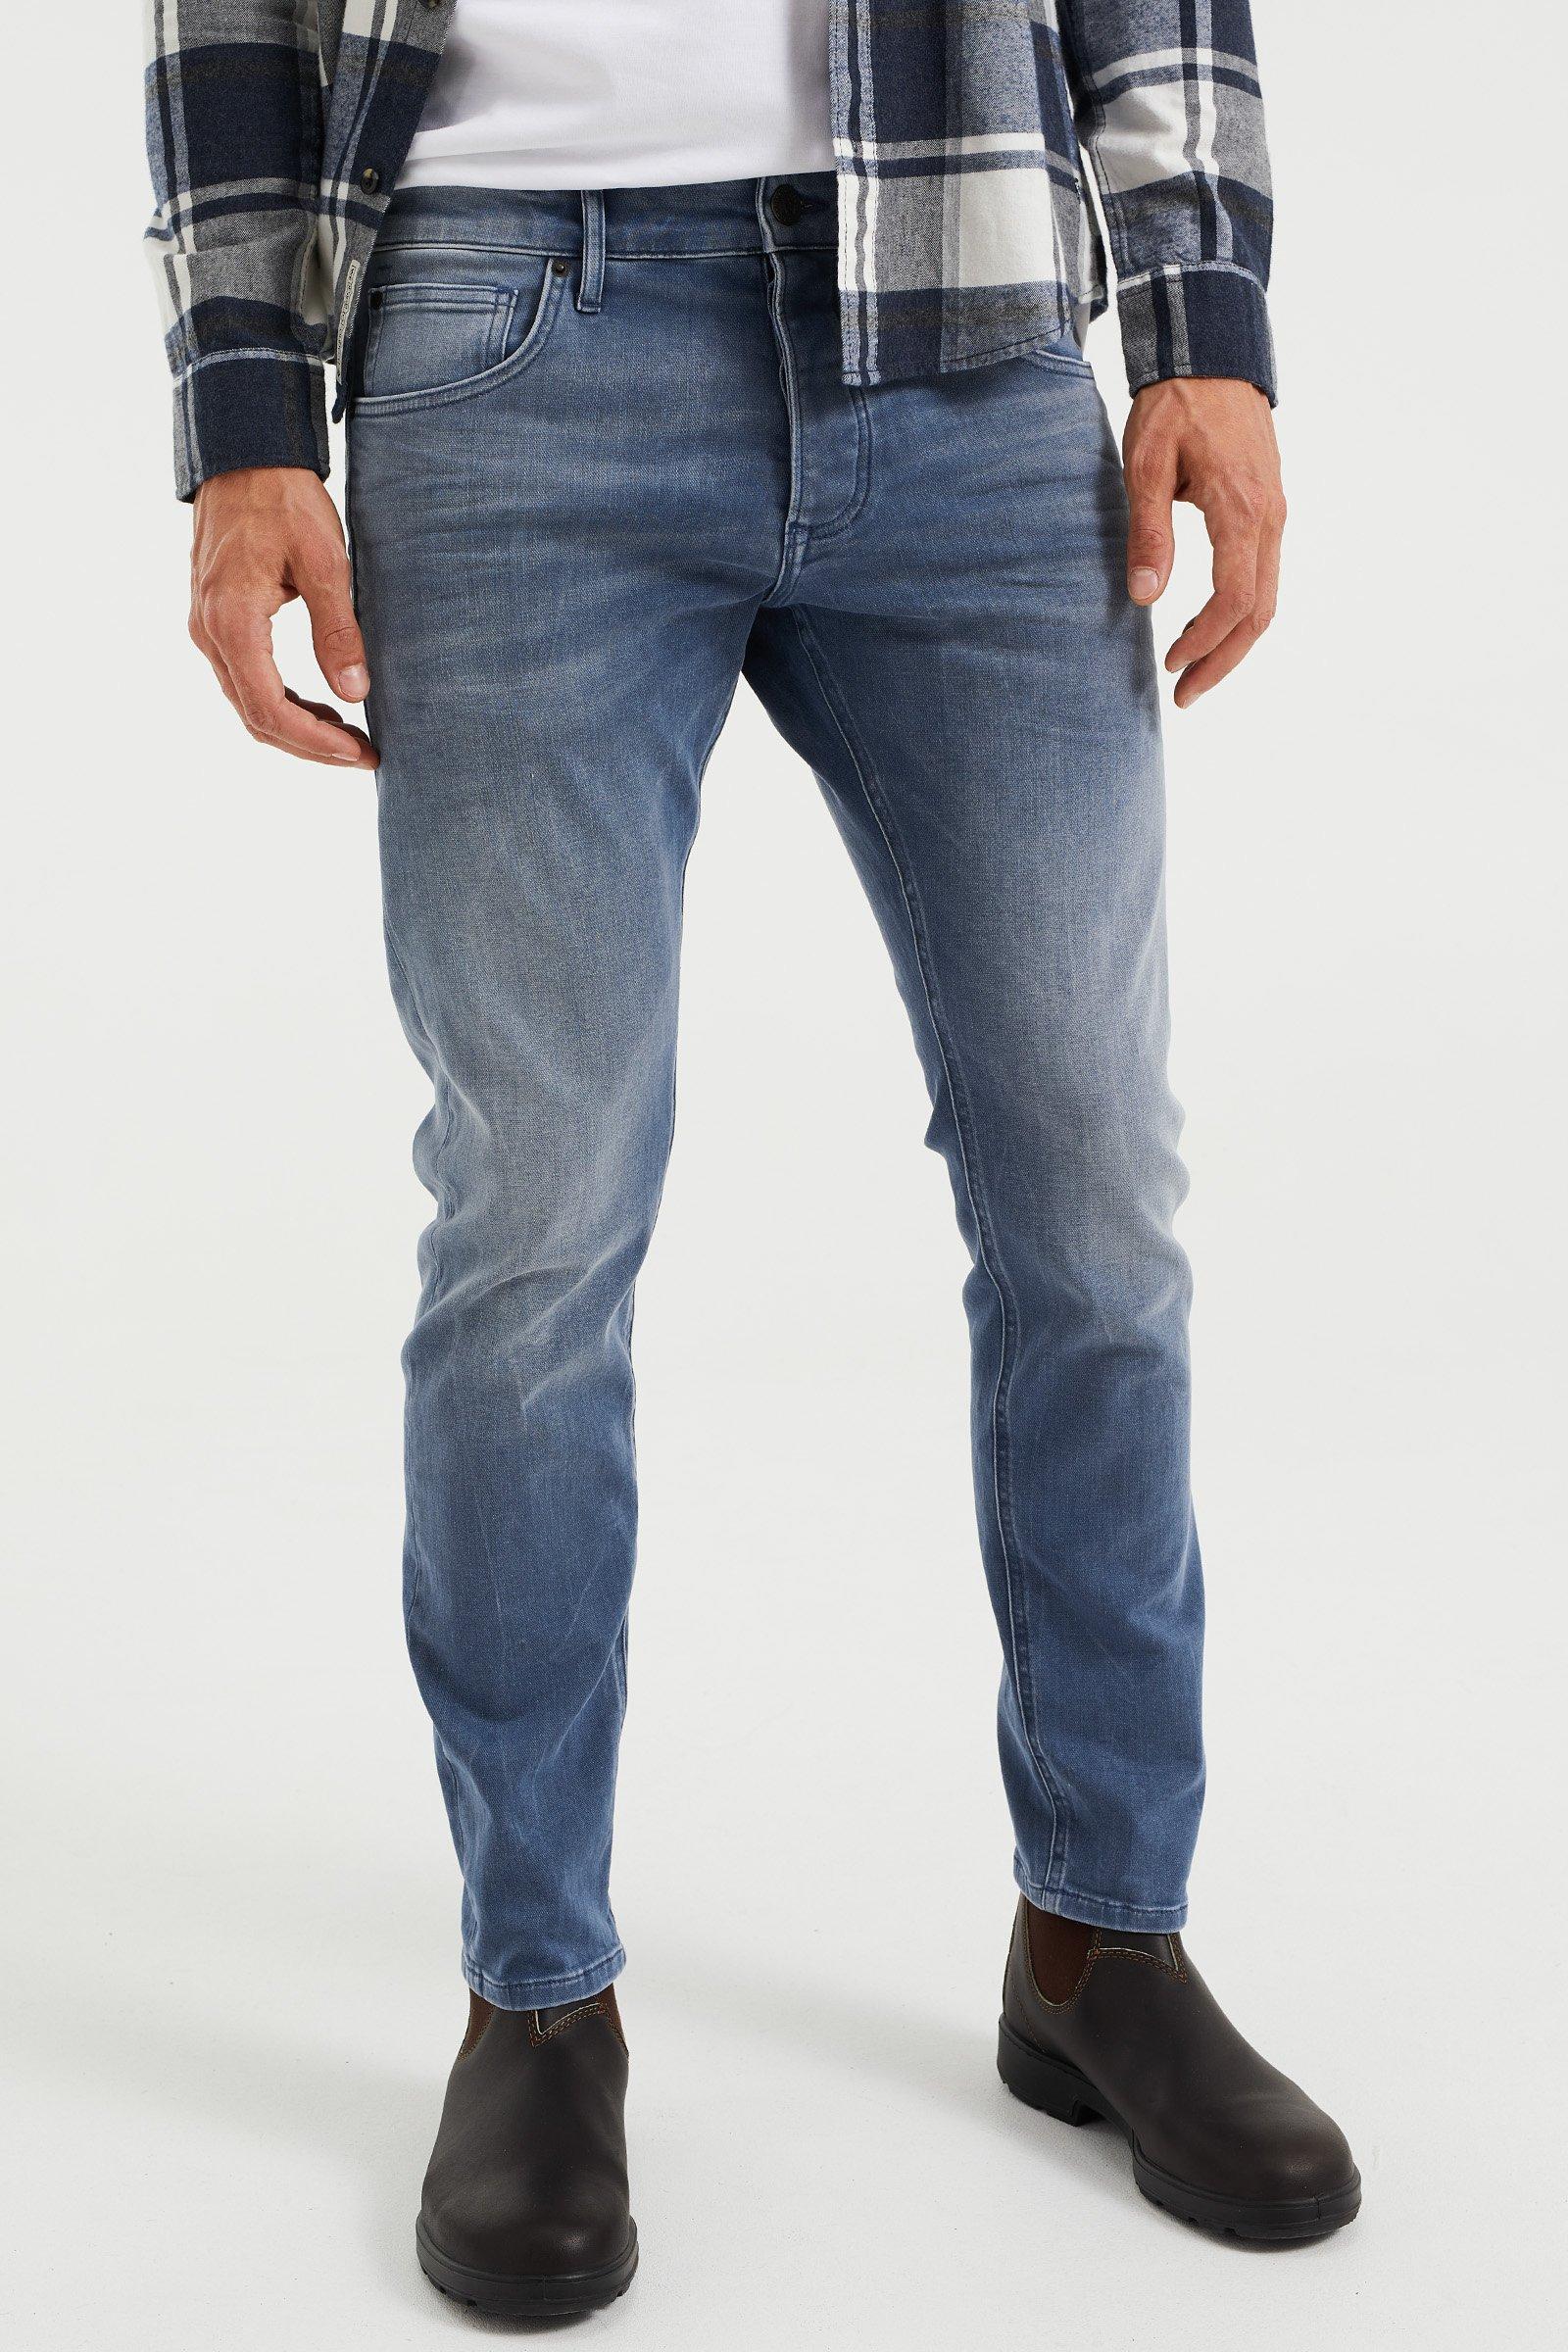 Image of WE Fashion 5-Pocket-Jeans - L34/29